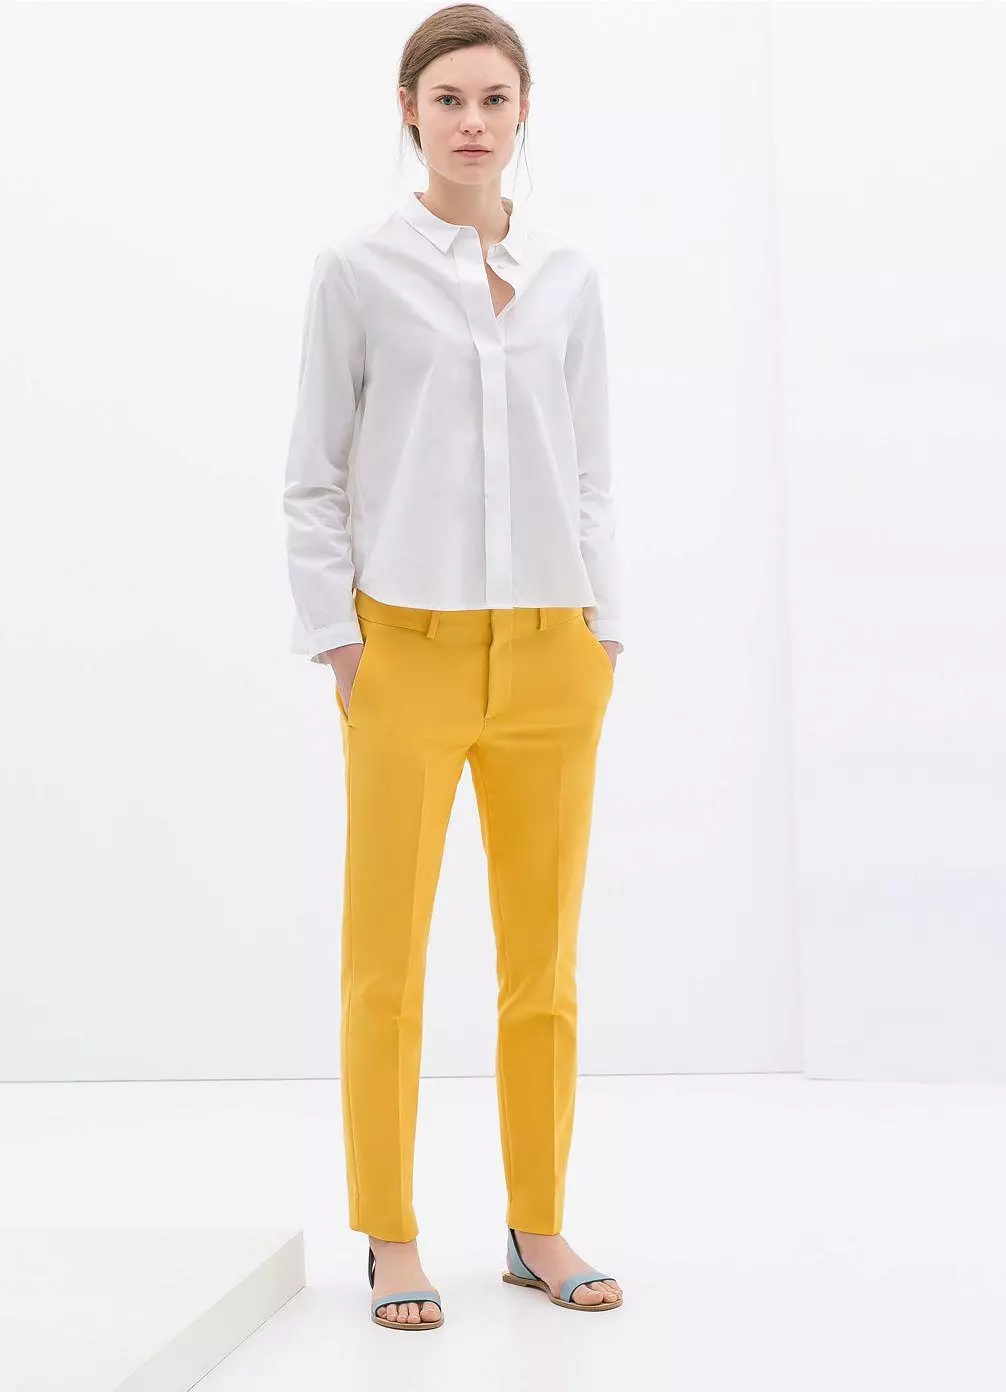 Modne hlače 2021: Ženski moderni modeli, modni trendovi 917_315